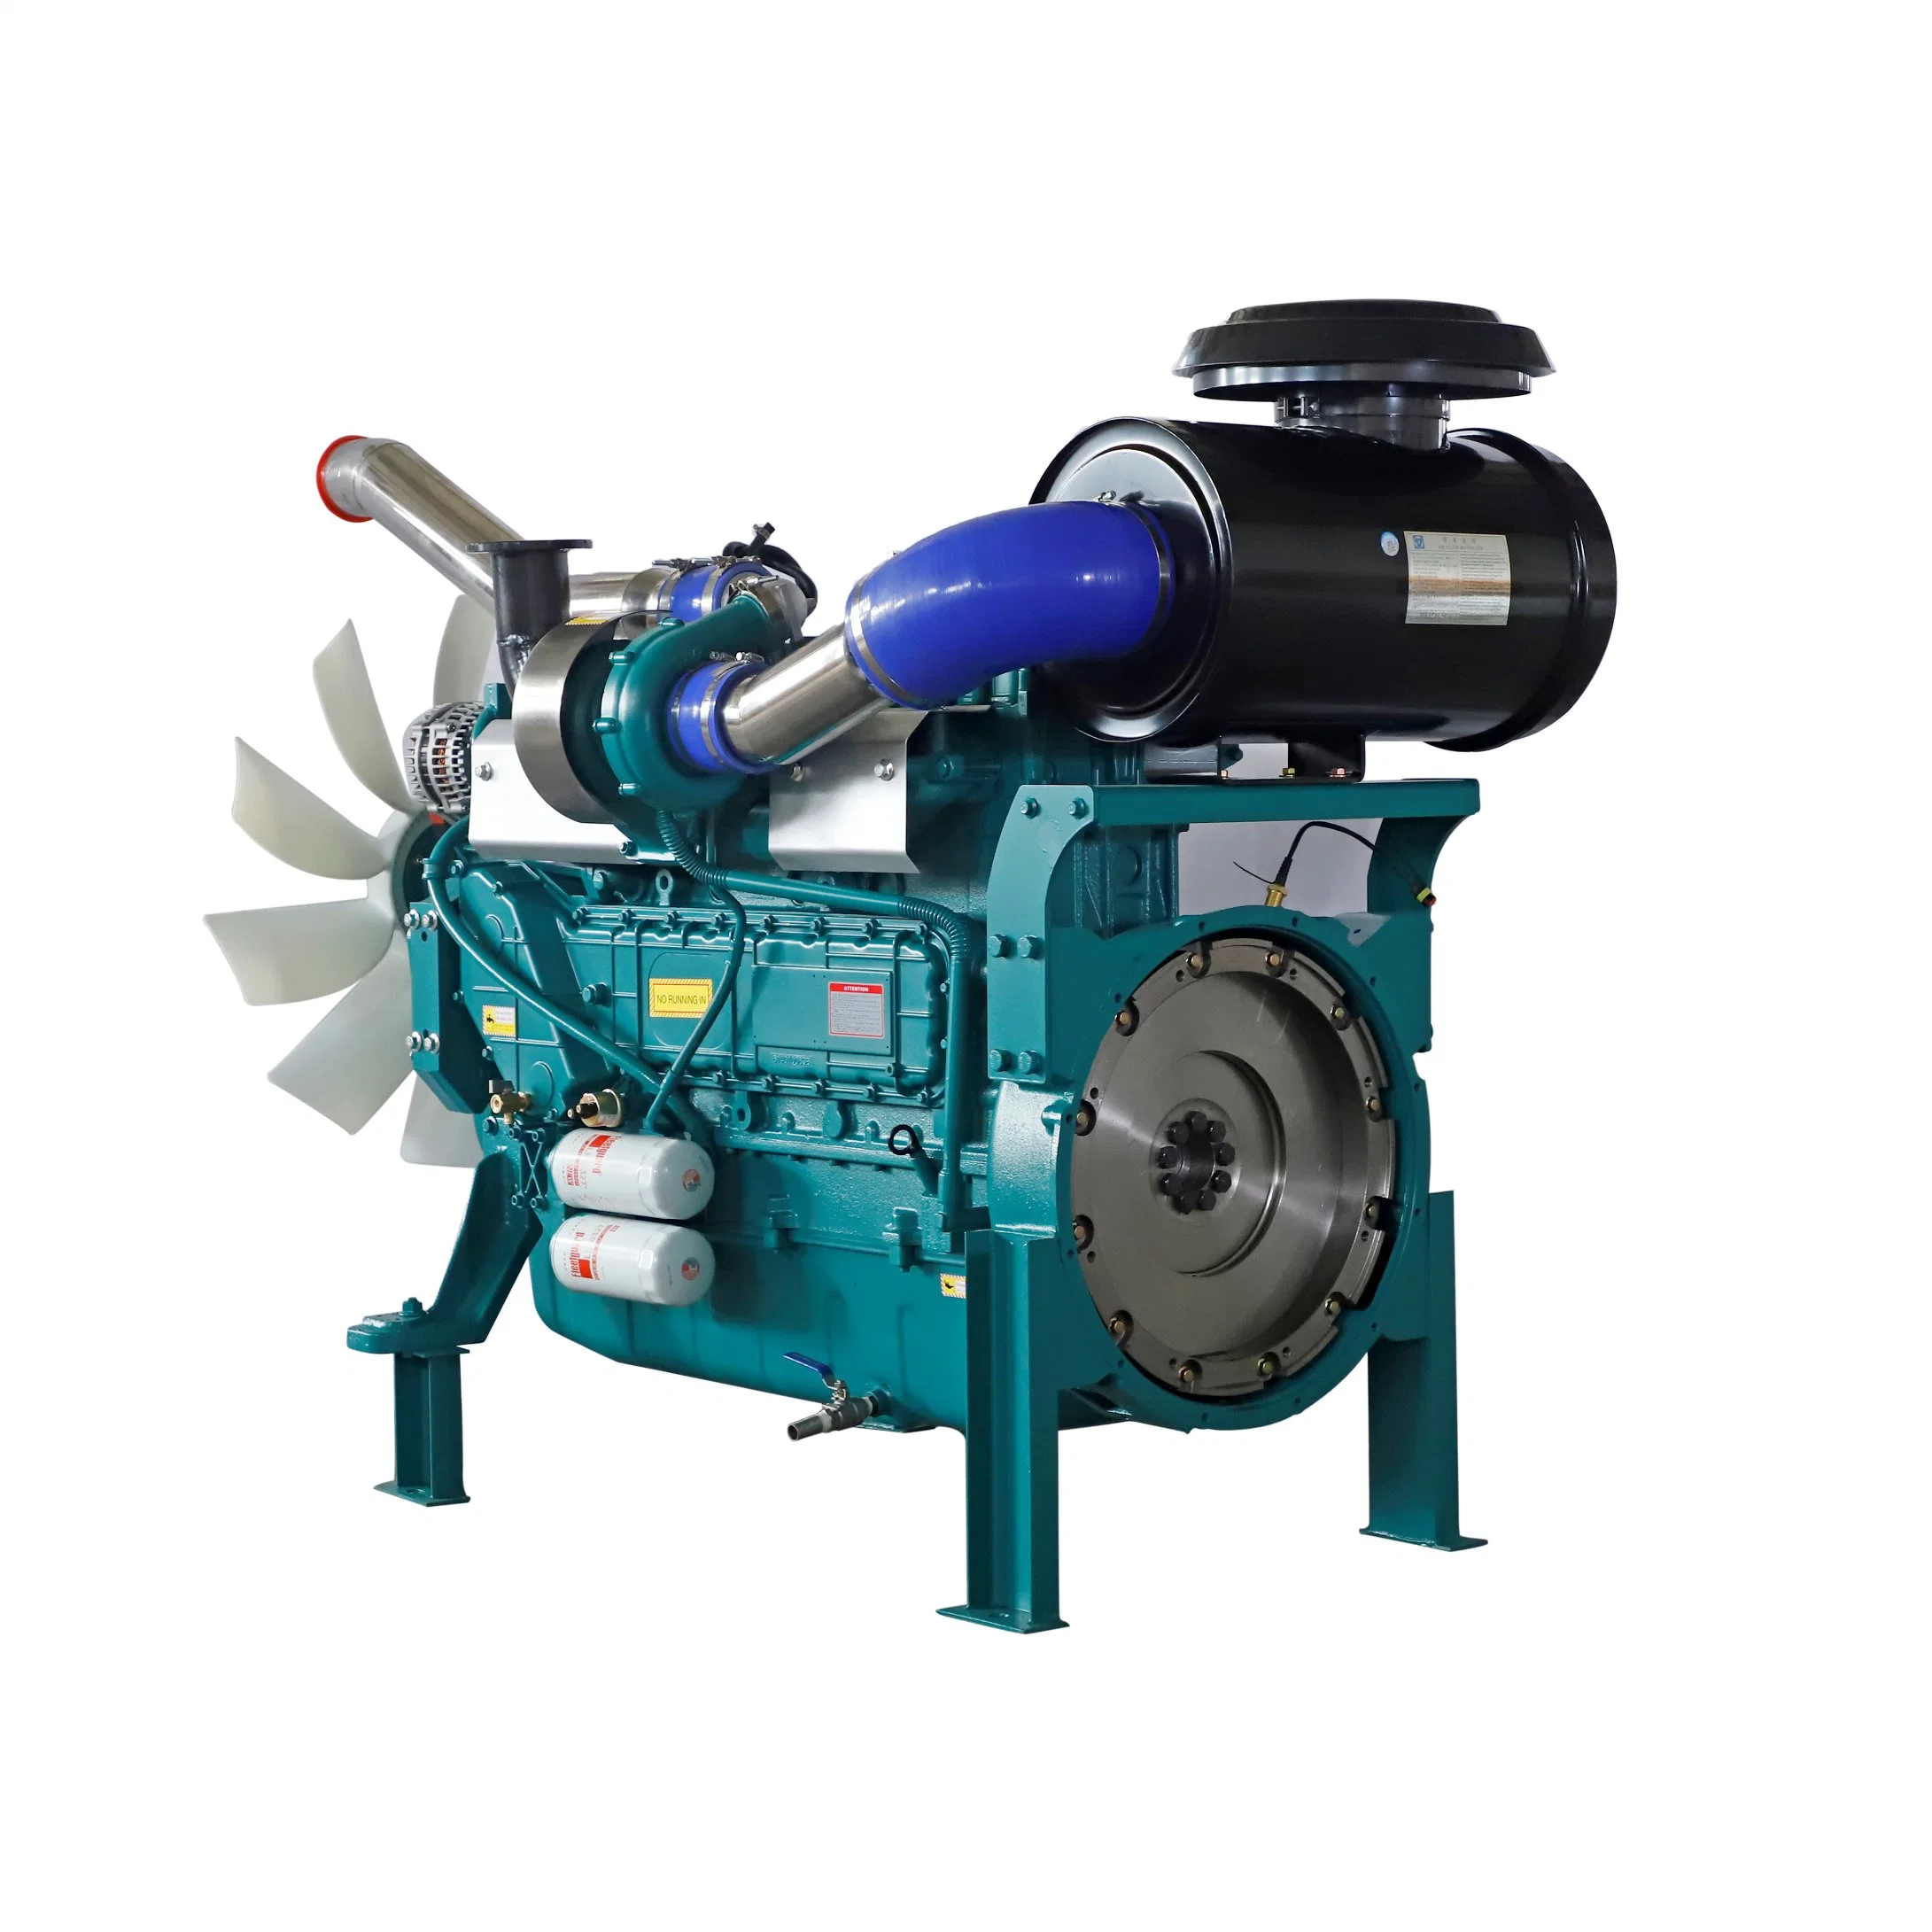 Motor diesel de injecção directa com 6 cilindros a 4 tempos Geradores eléctricos utilizados para os conjuntos de geradores a diesel